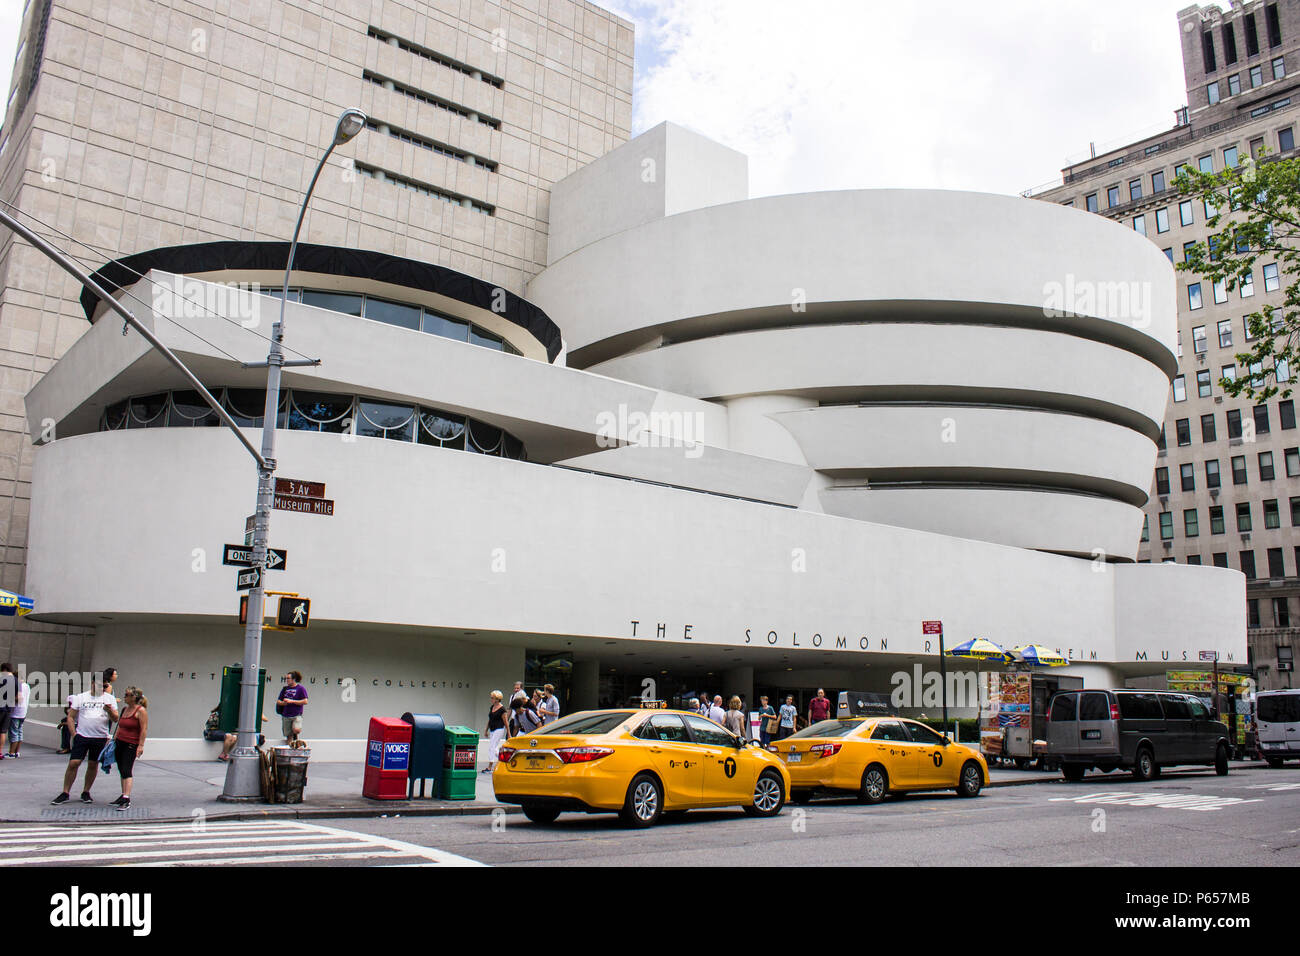 La ville de New York. Le Solomon R. Guggenheim Museum, un musée d'art situé au Cinquième Avenue, dans le quartier de l'Upper East Side de Manhattan. Construit en 1959 Banque D'Images